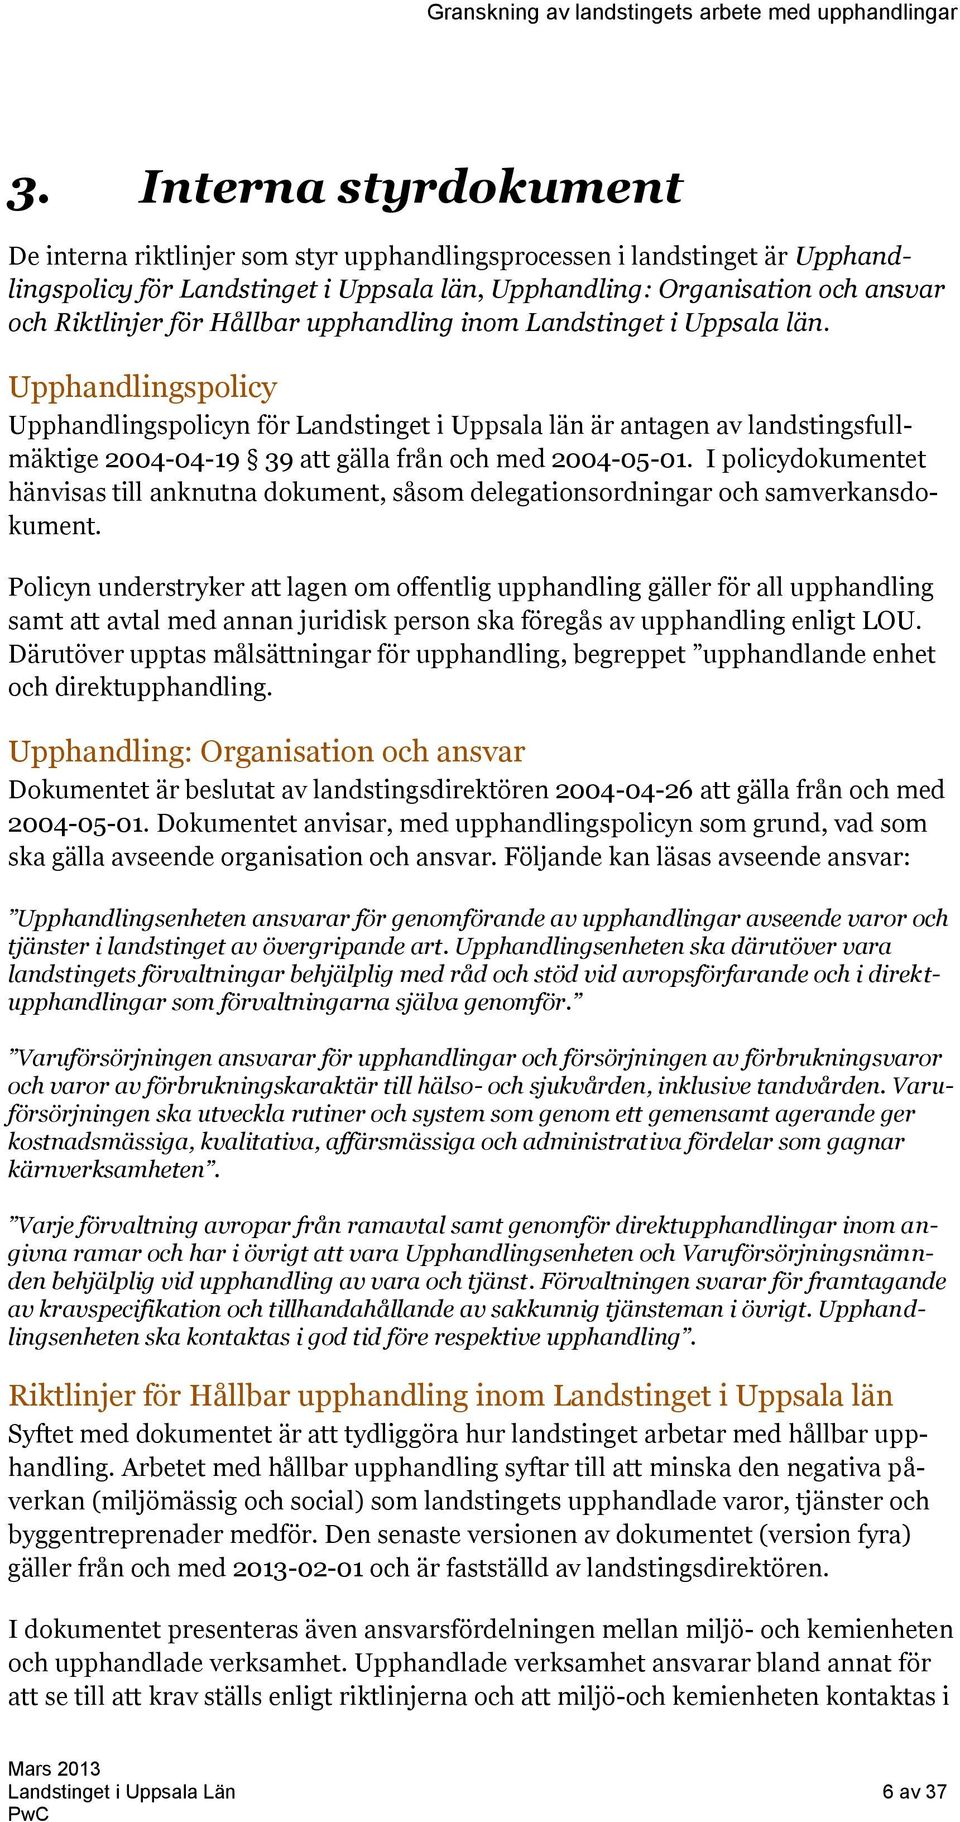 Upphandlingspolicy Upphandlingspolicyn för Landstinget i Uppsala län är antagen av landstingsfullmäktige 2004-04-19 39 att gälla från och med 2004-05-01.